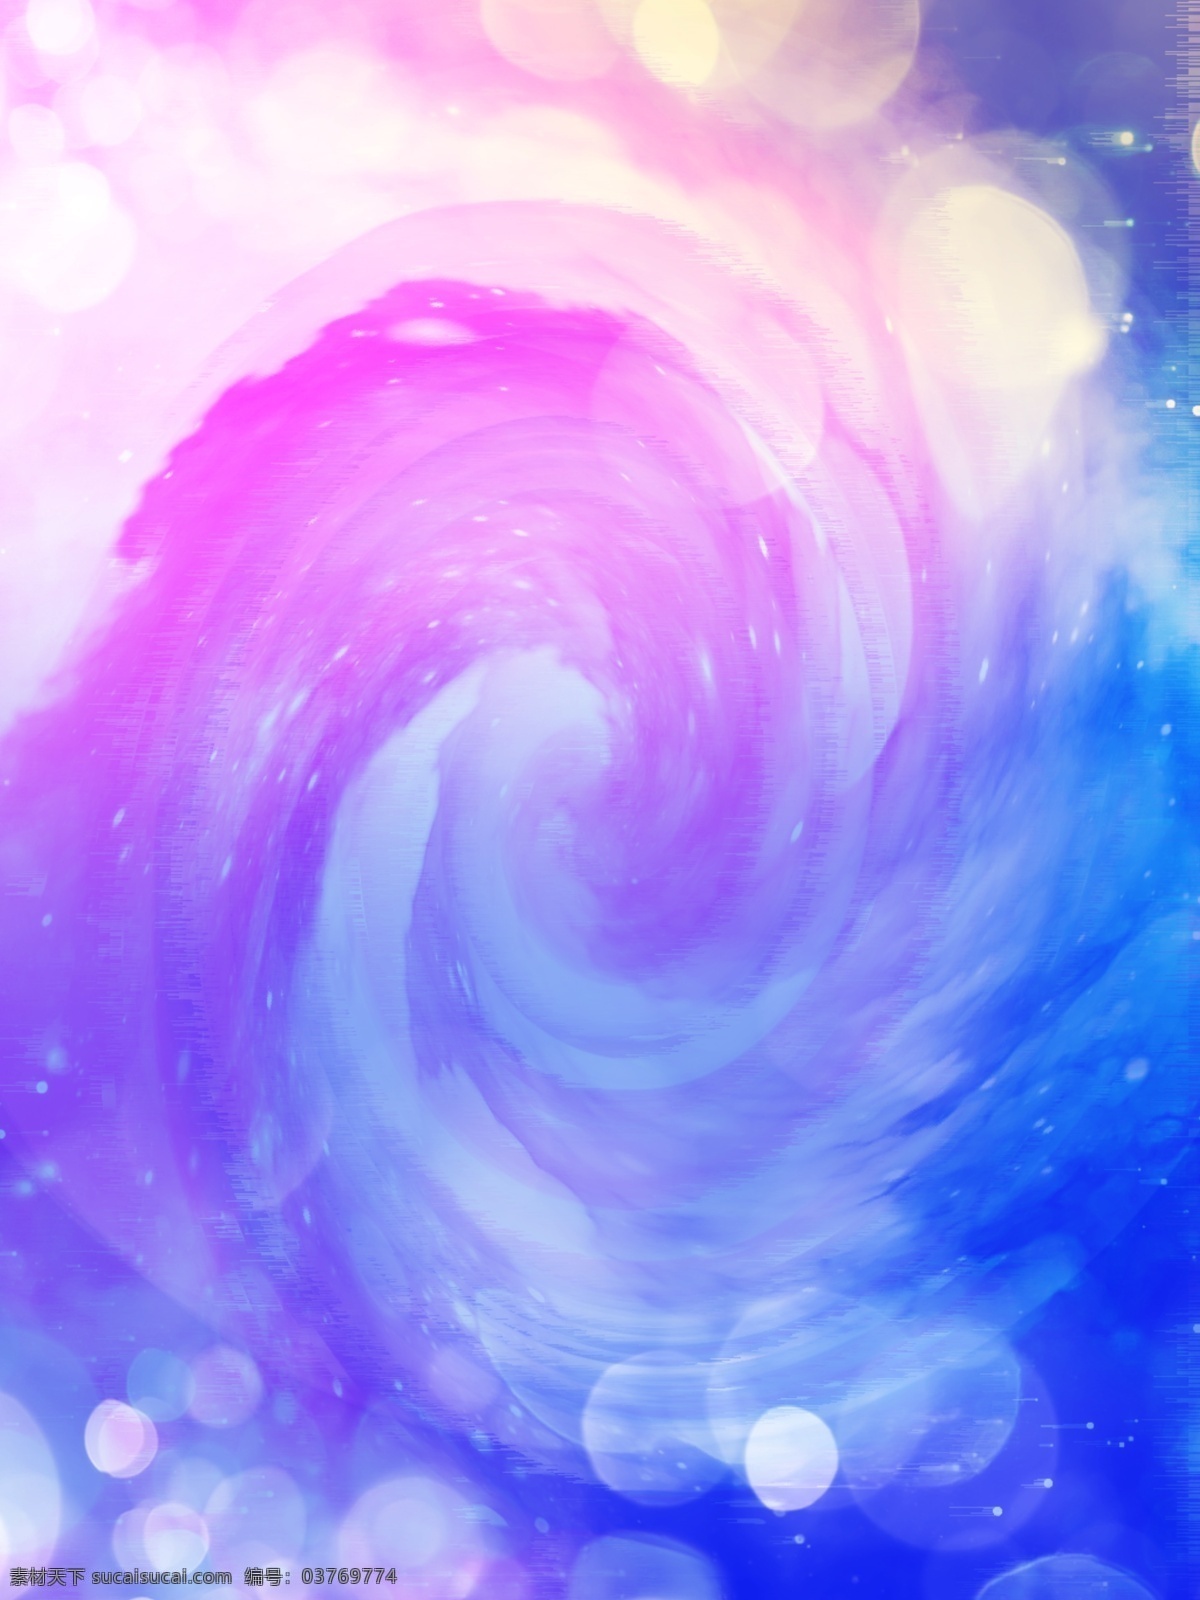 蓝紫 渐变 宇宙 大气层 梦幻 神秘 背景 星空 光斑 唯美 浪漫 h5 蓝紫色渐变 时尚大气